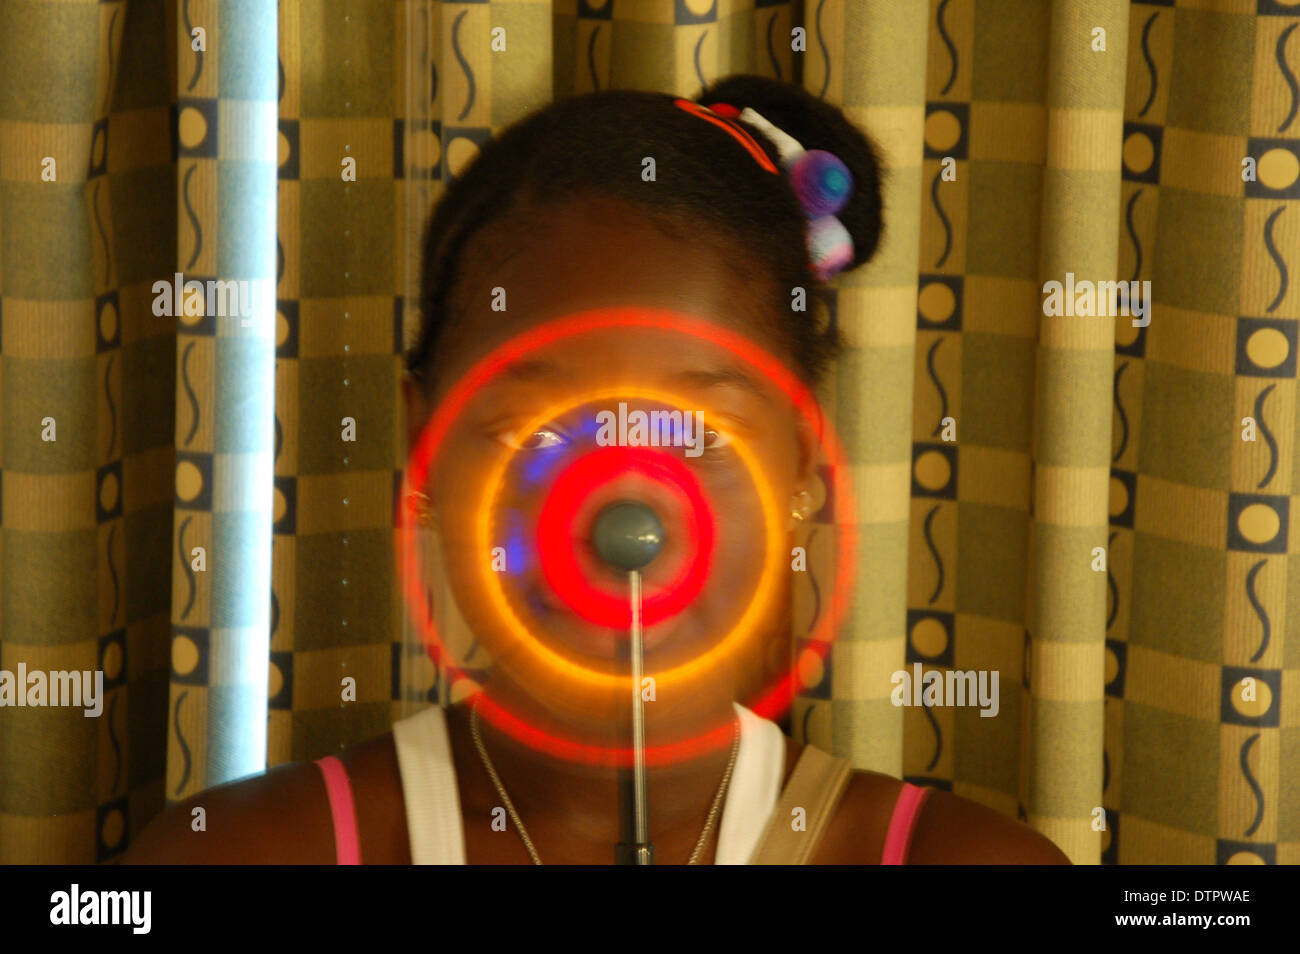 Portrait d'une jeune fille afro-antillaise avec une roue tournante jouet allumé de couleur Banque D'Images